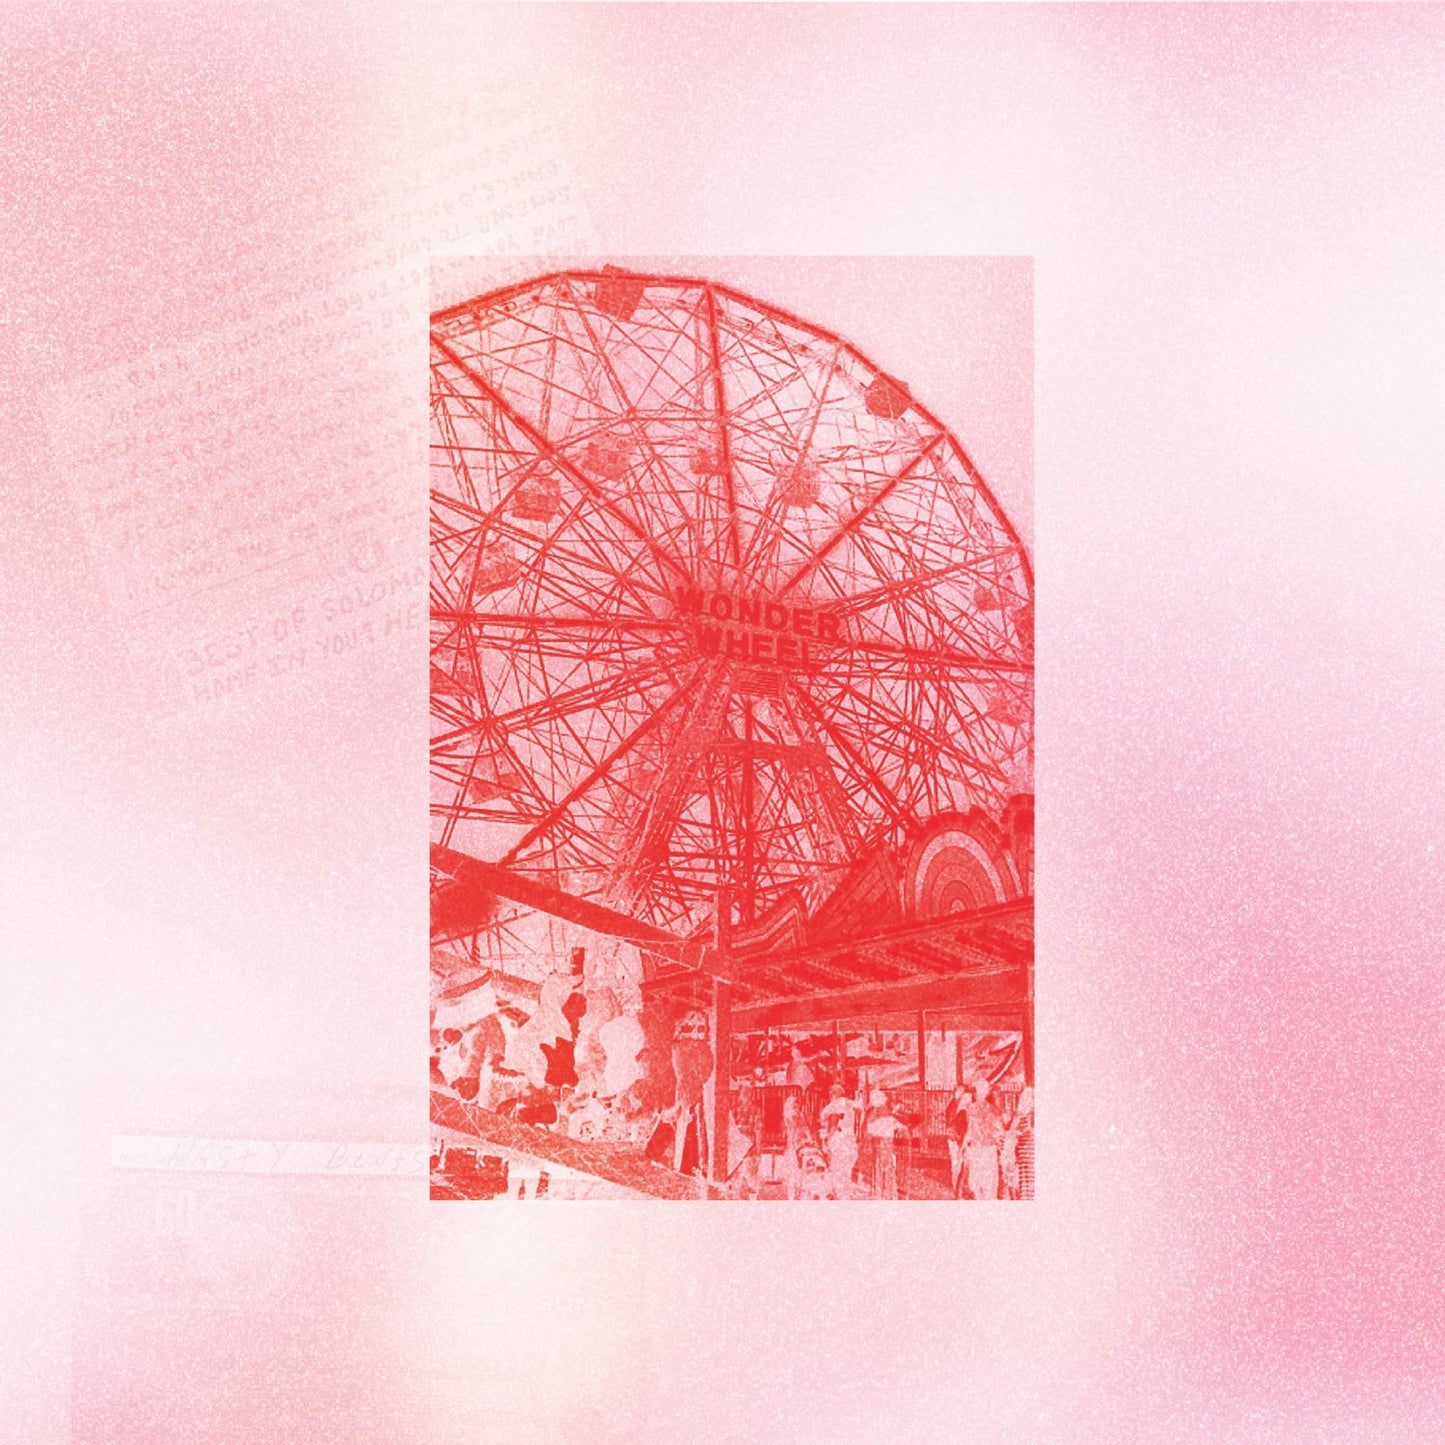 Coney Island (Digital)